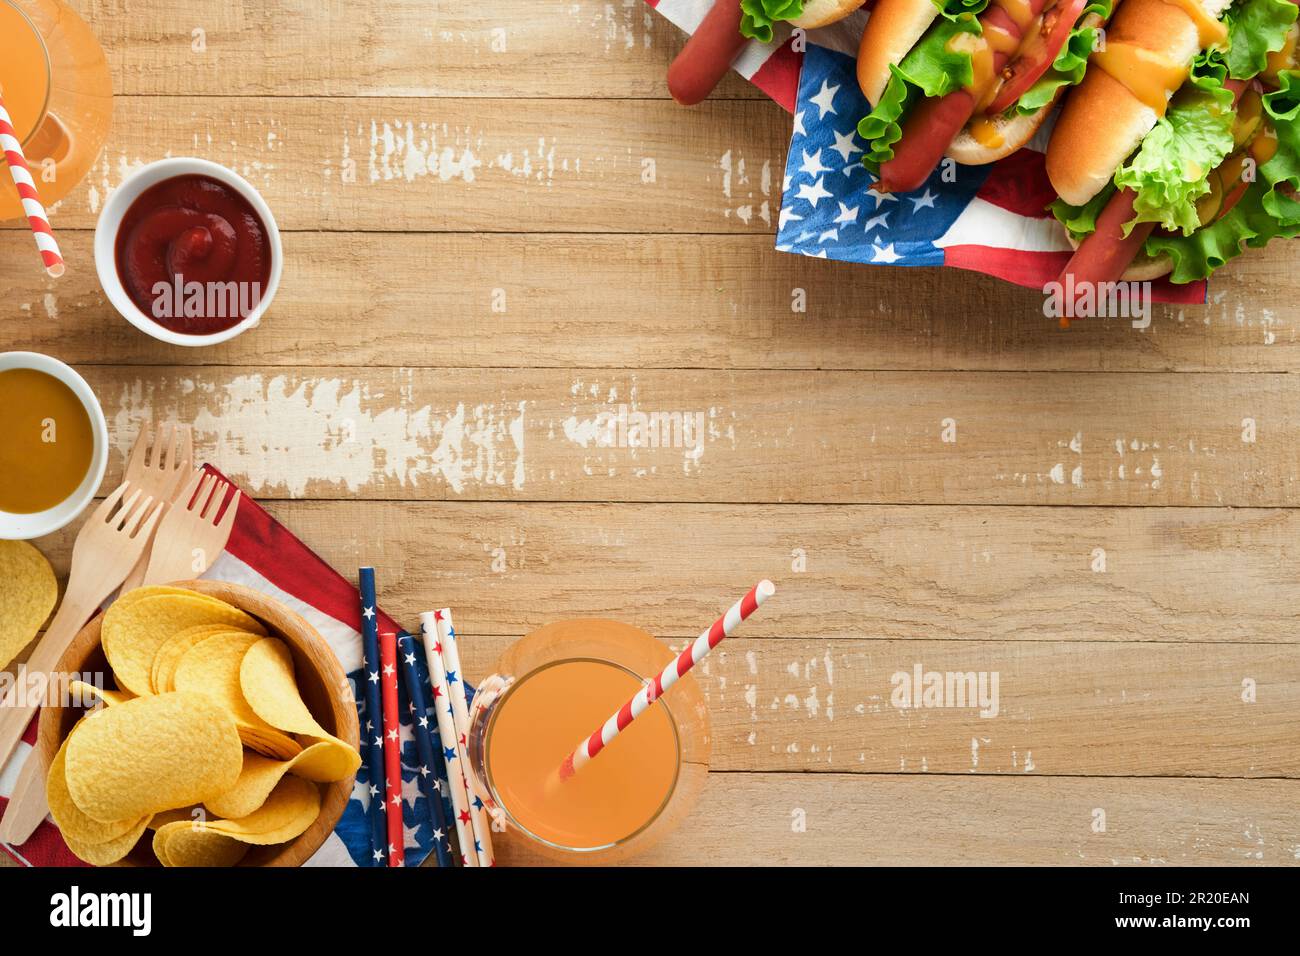 4th de juillet American Independence Day cuisine traditionnelle de pique-nique. Hot dog avec chips de pomme de terre et cocktail, drapeaux américains et symboles de USA Patriotic pi Banque D'Images